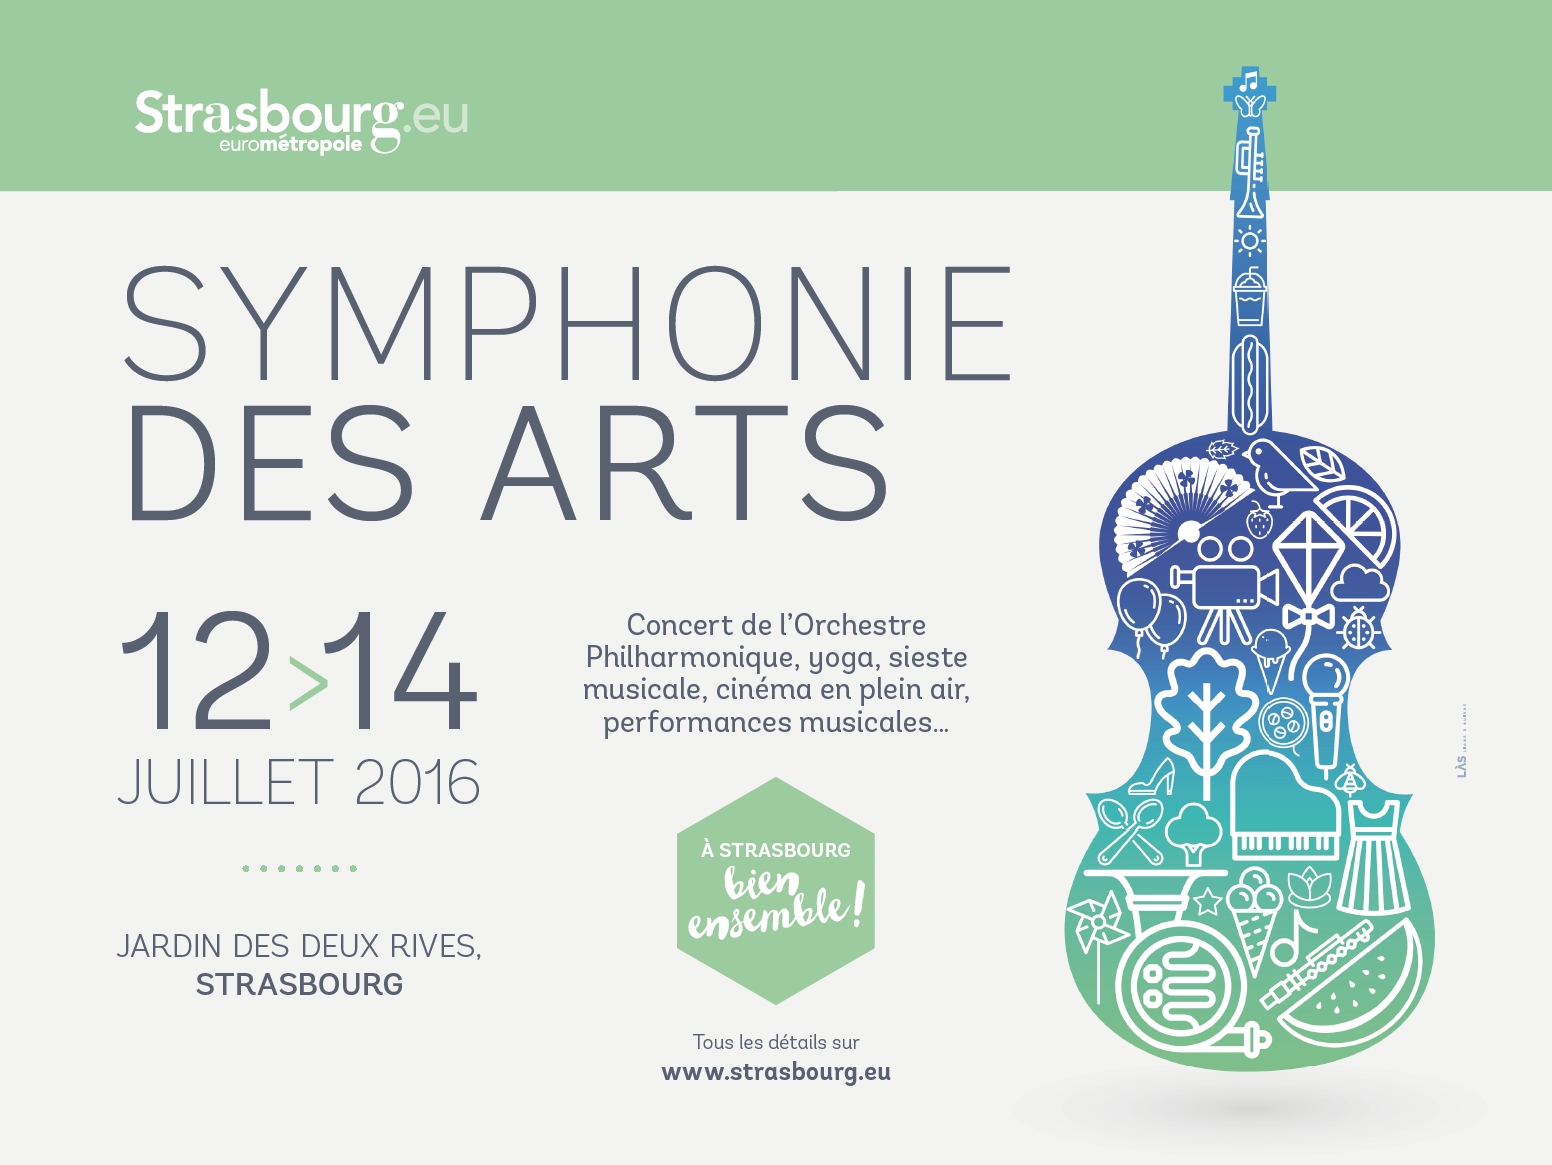 Symphonie des arts 2016